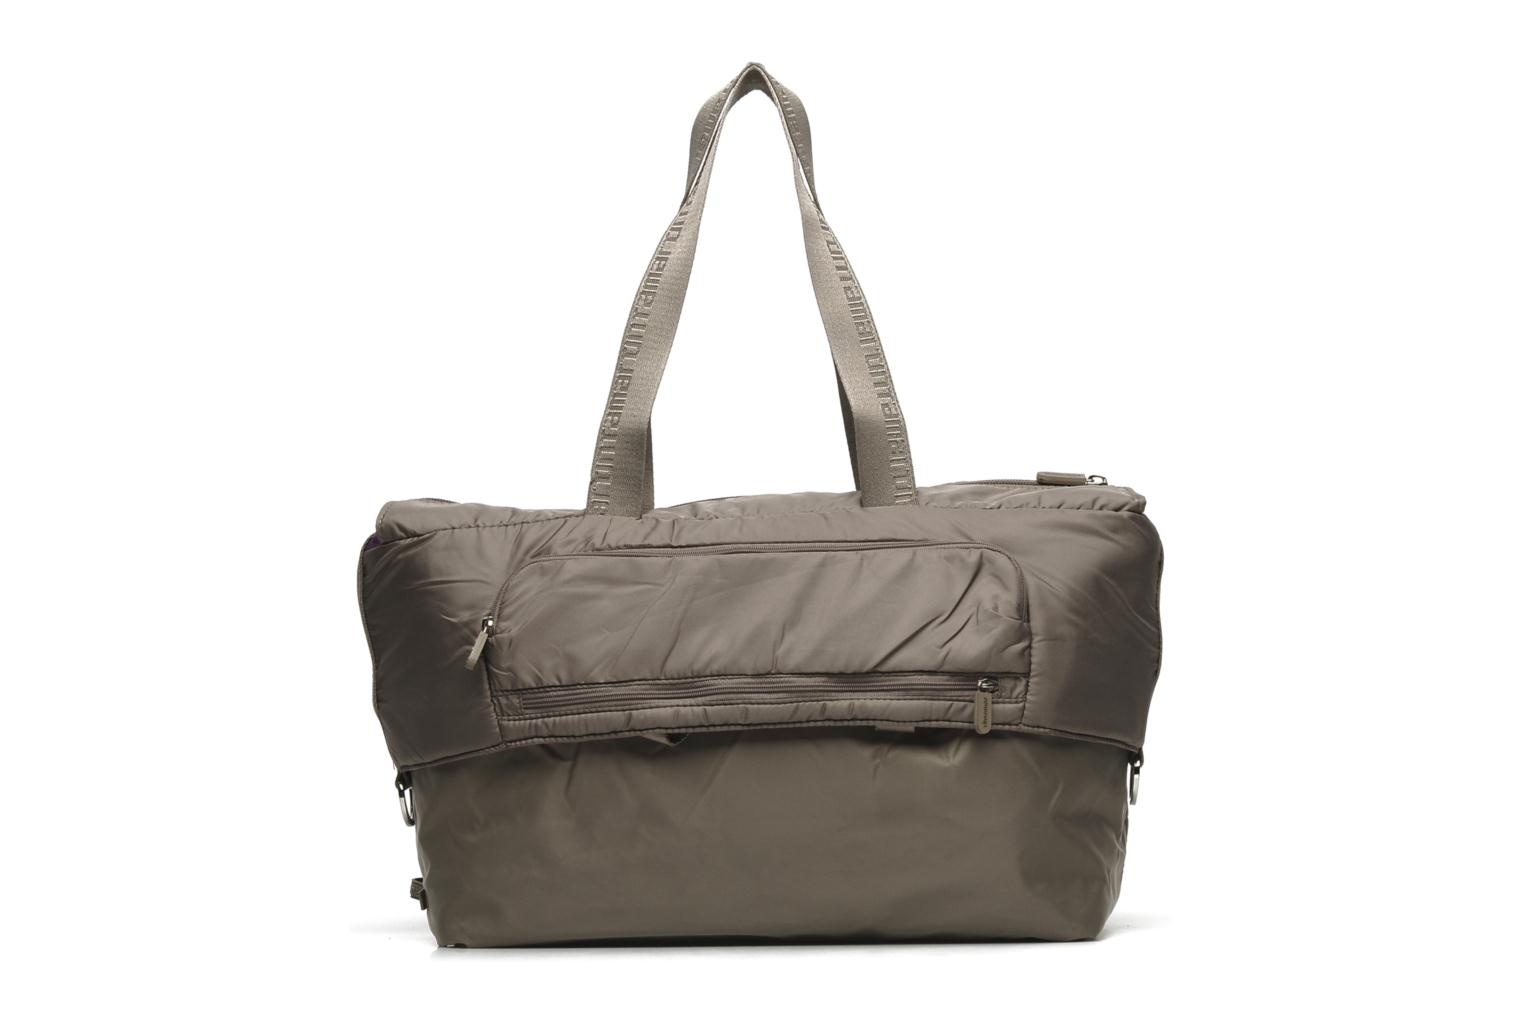 Tintamar City Bag Cabas large Handbags in Brown at Sarenza.co.uk (114639)